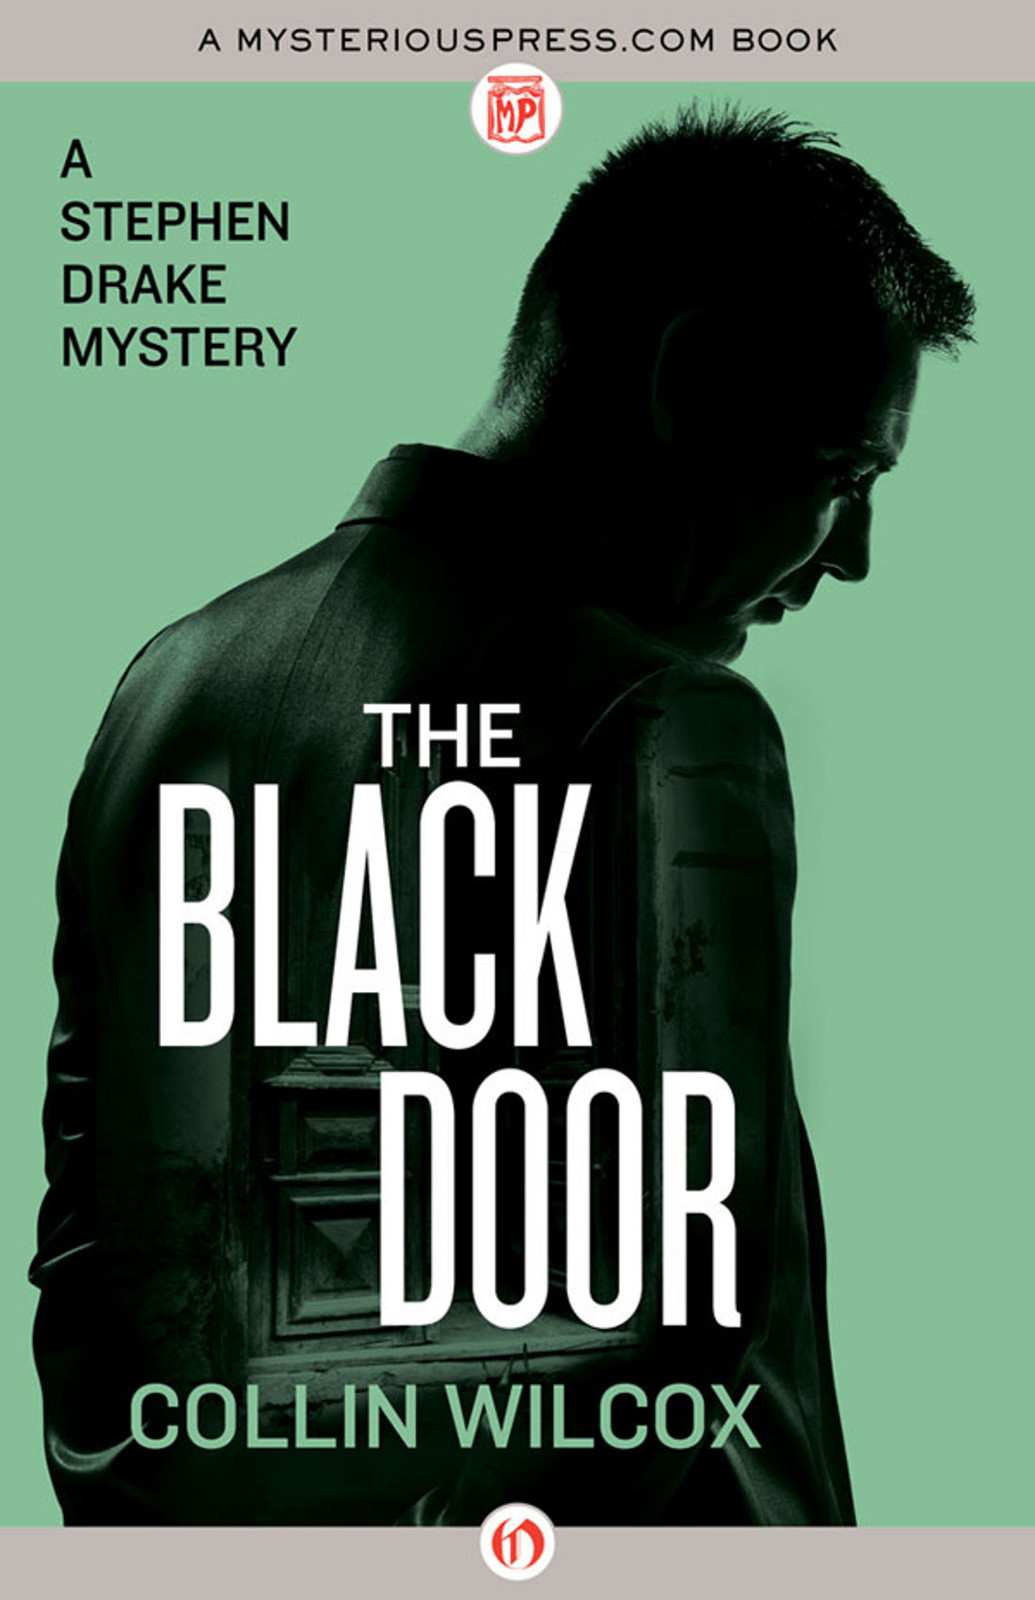 The Black Door by Collin Wilcox